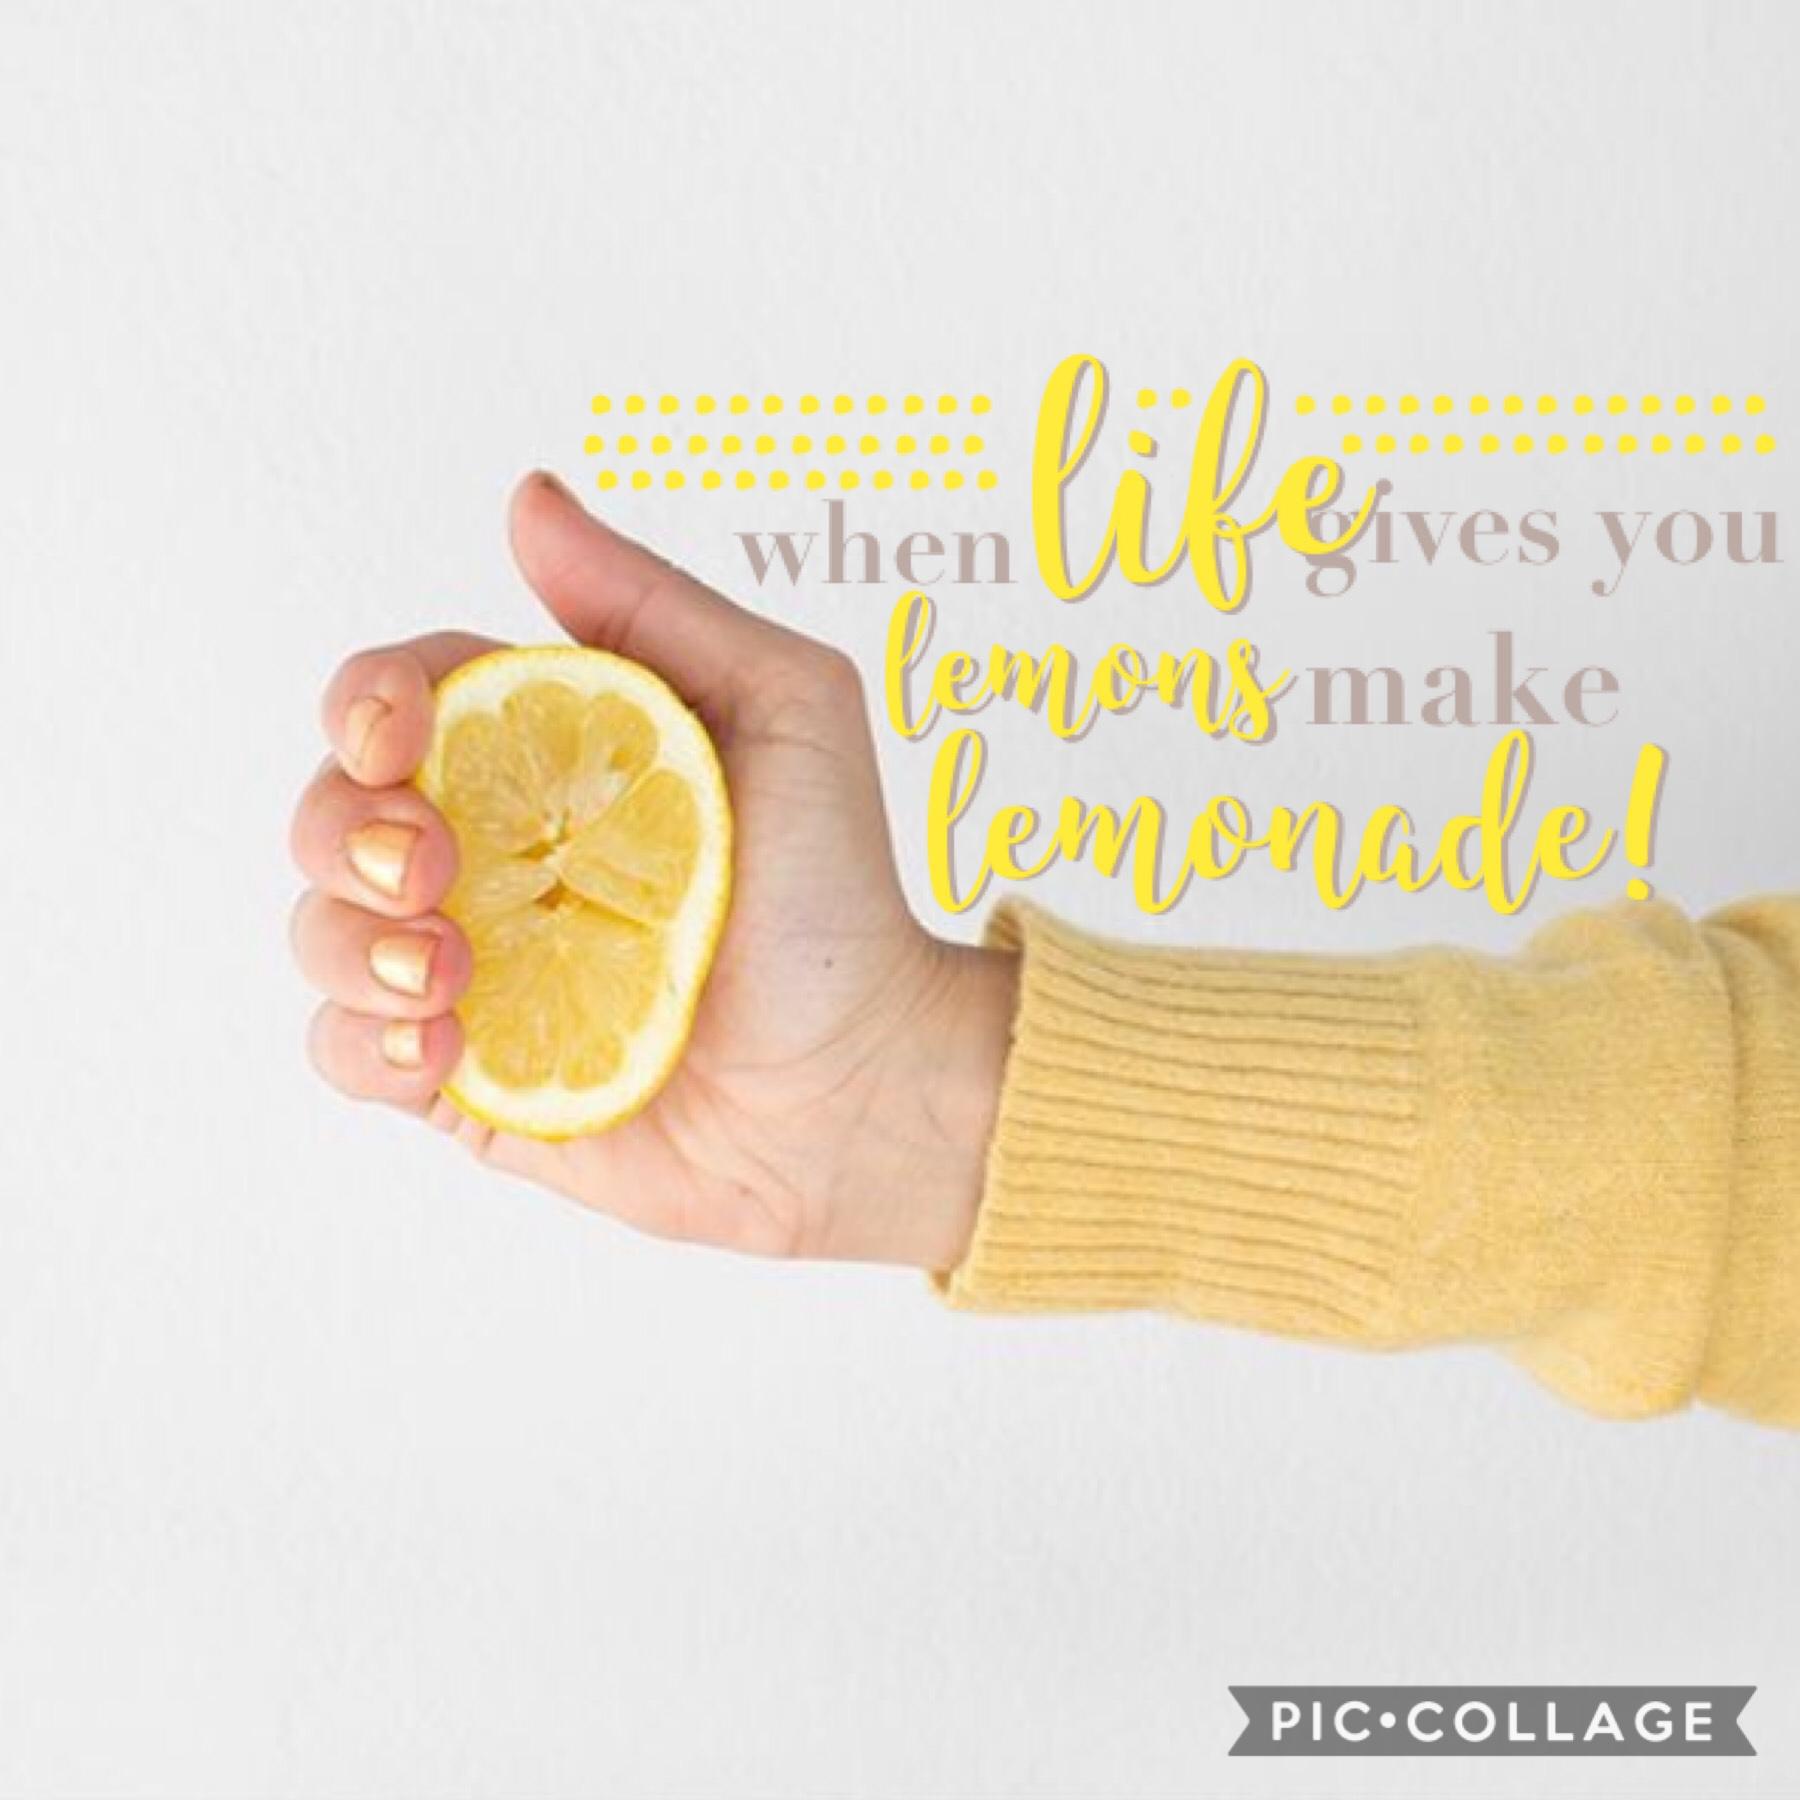 new theme.
when life gives you lemons, make lemonade!🍋